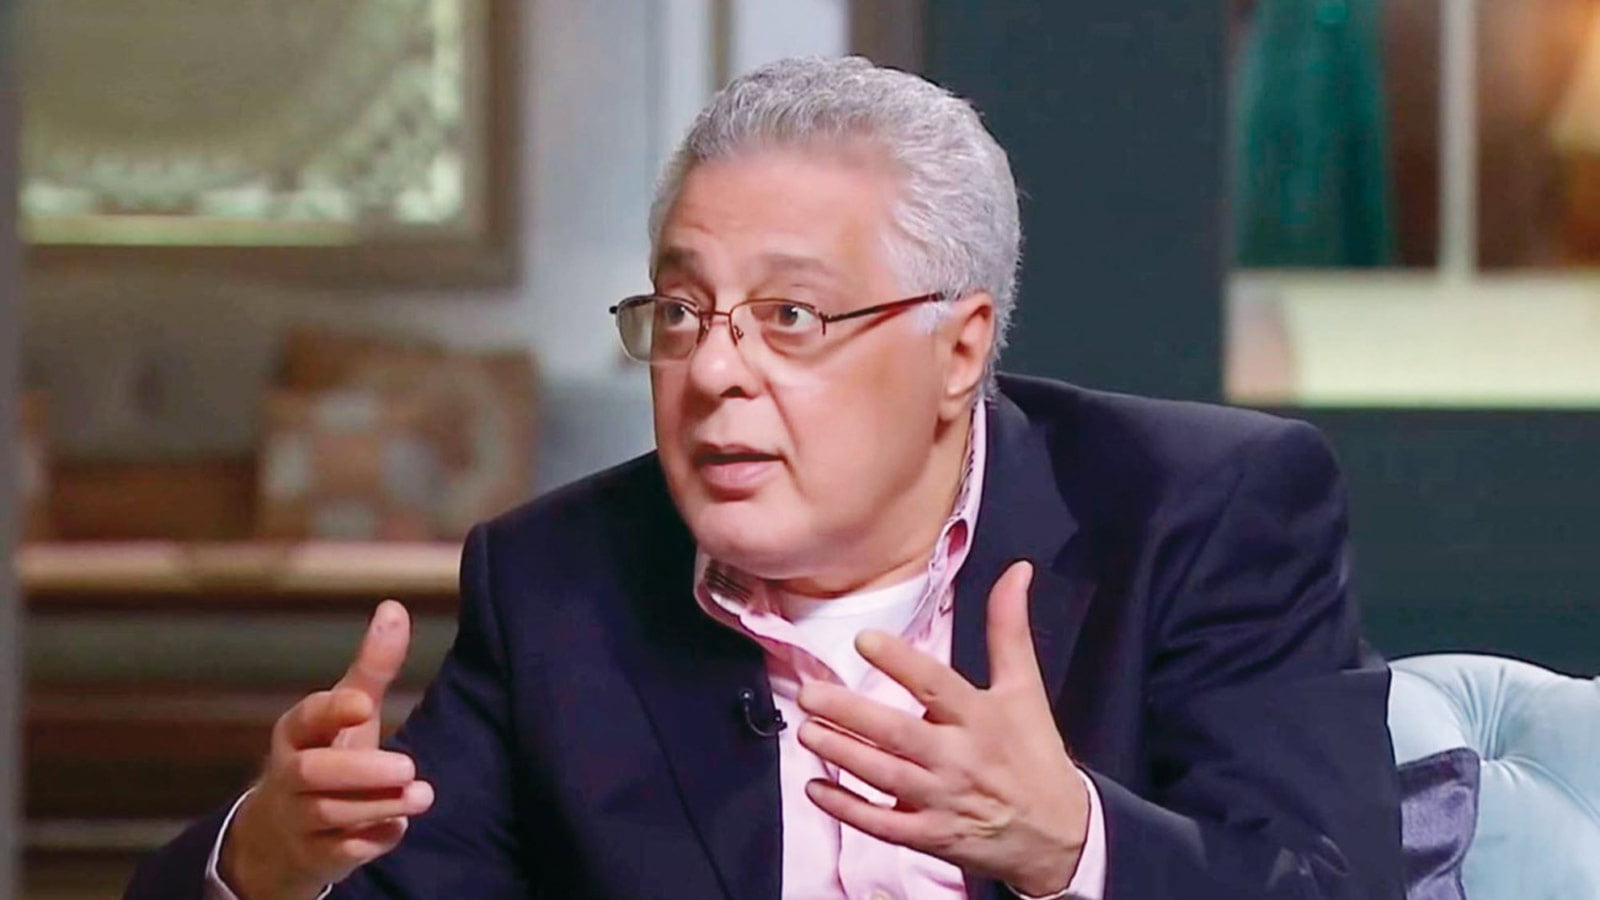 سبب اعتزال الفنان توفيق عبد الحميد التمثيل نهائيا